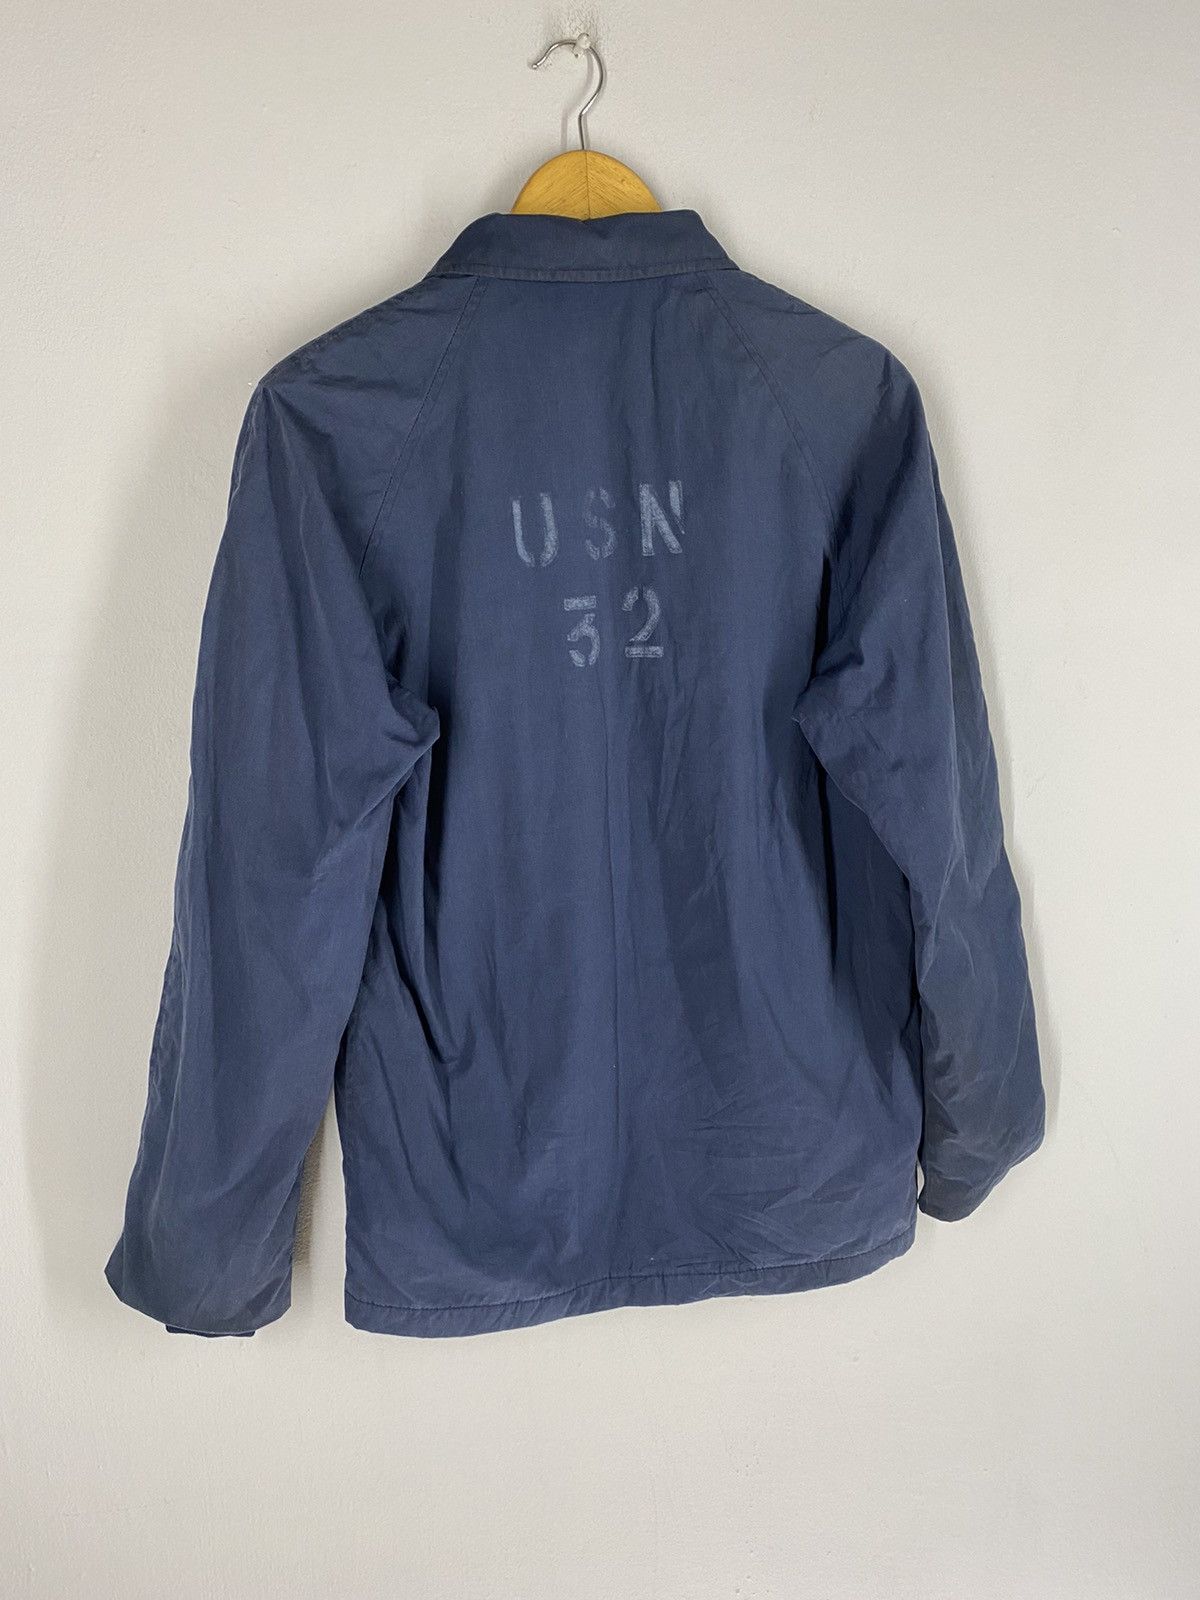 Usn Vintage 80s USN 32 Top Zipper Jacket Size US S / EU 44-46 / 1 - 3 Thumbnail